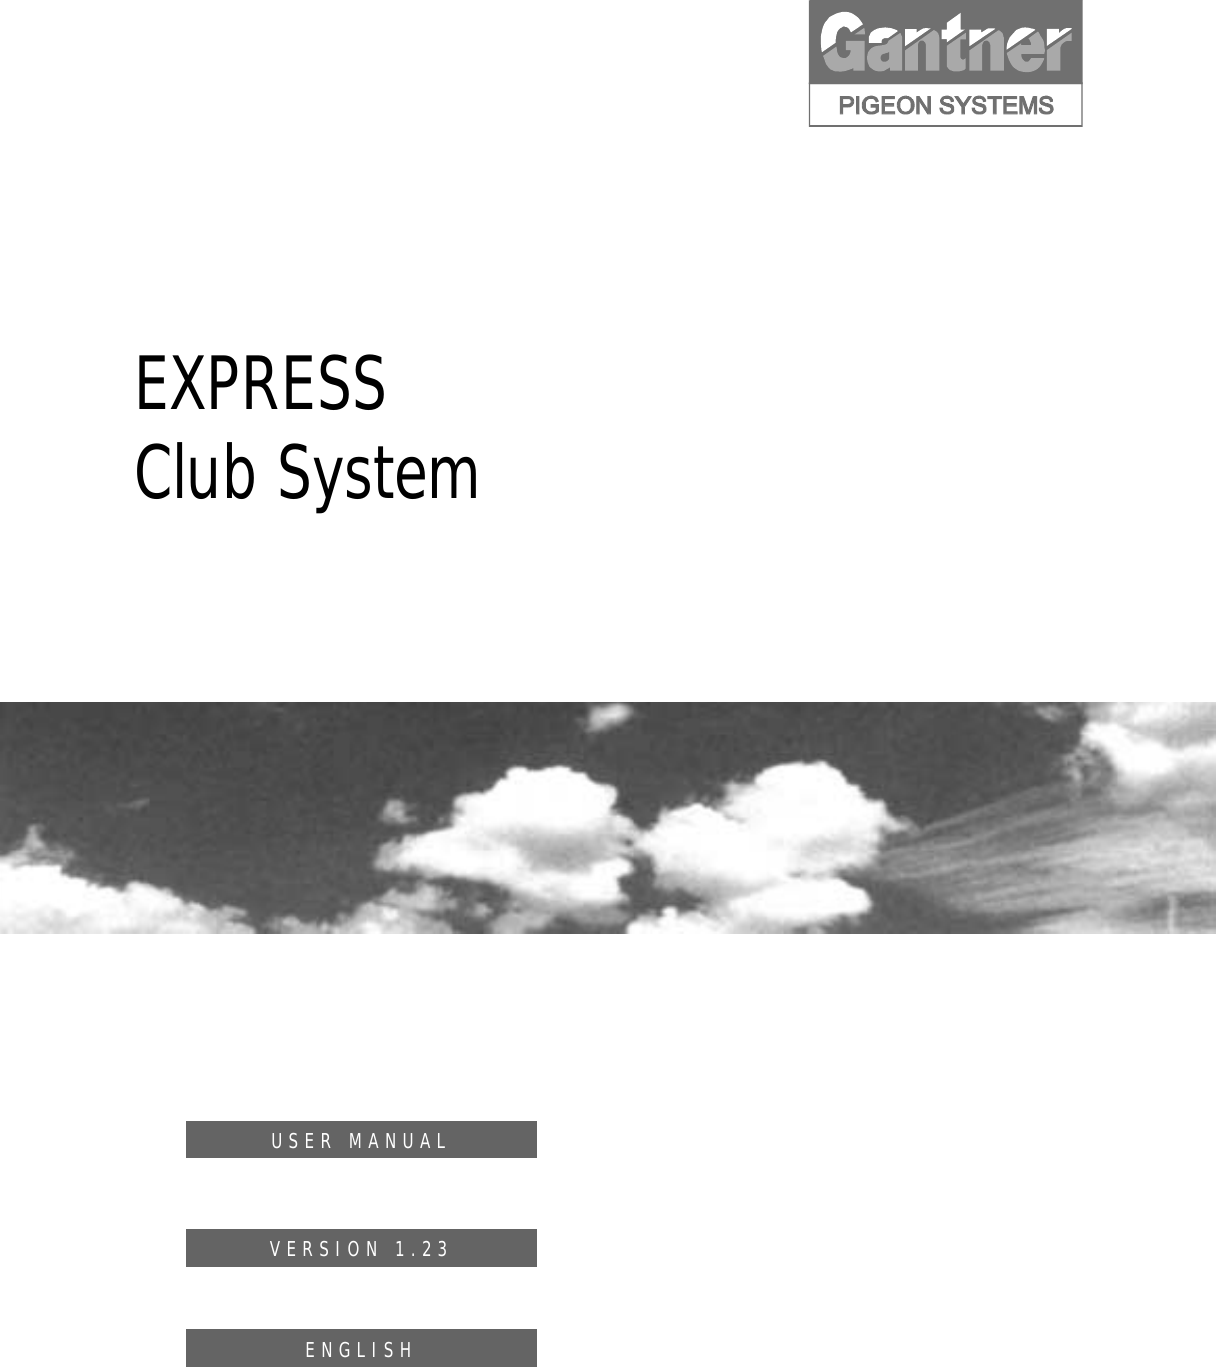        EXPRESS Club System        USER MANUALVERSION 1.23ENGLISH